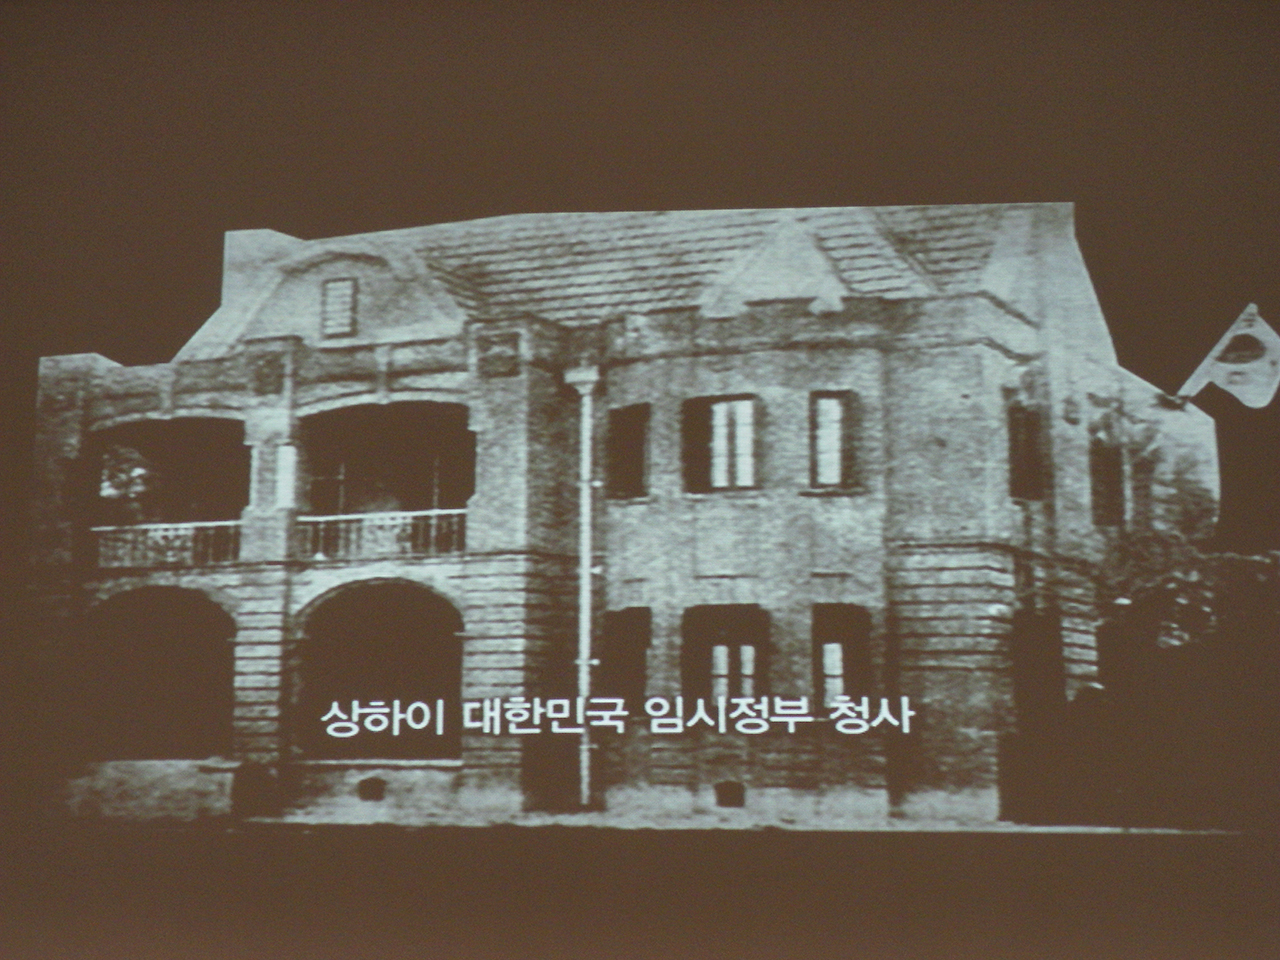 임시정부 청사. 서울시 신문로2가 경찰박물관에서 찍은 사진. 